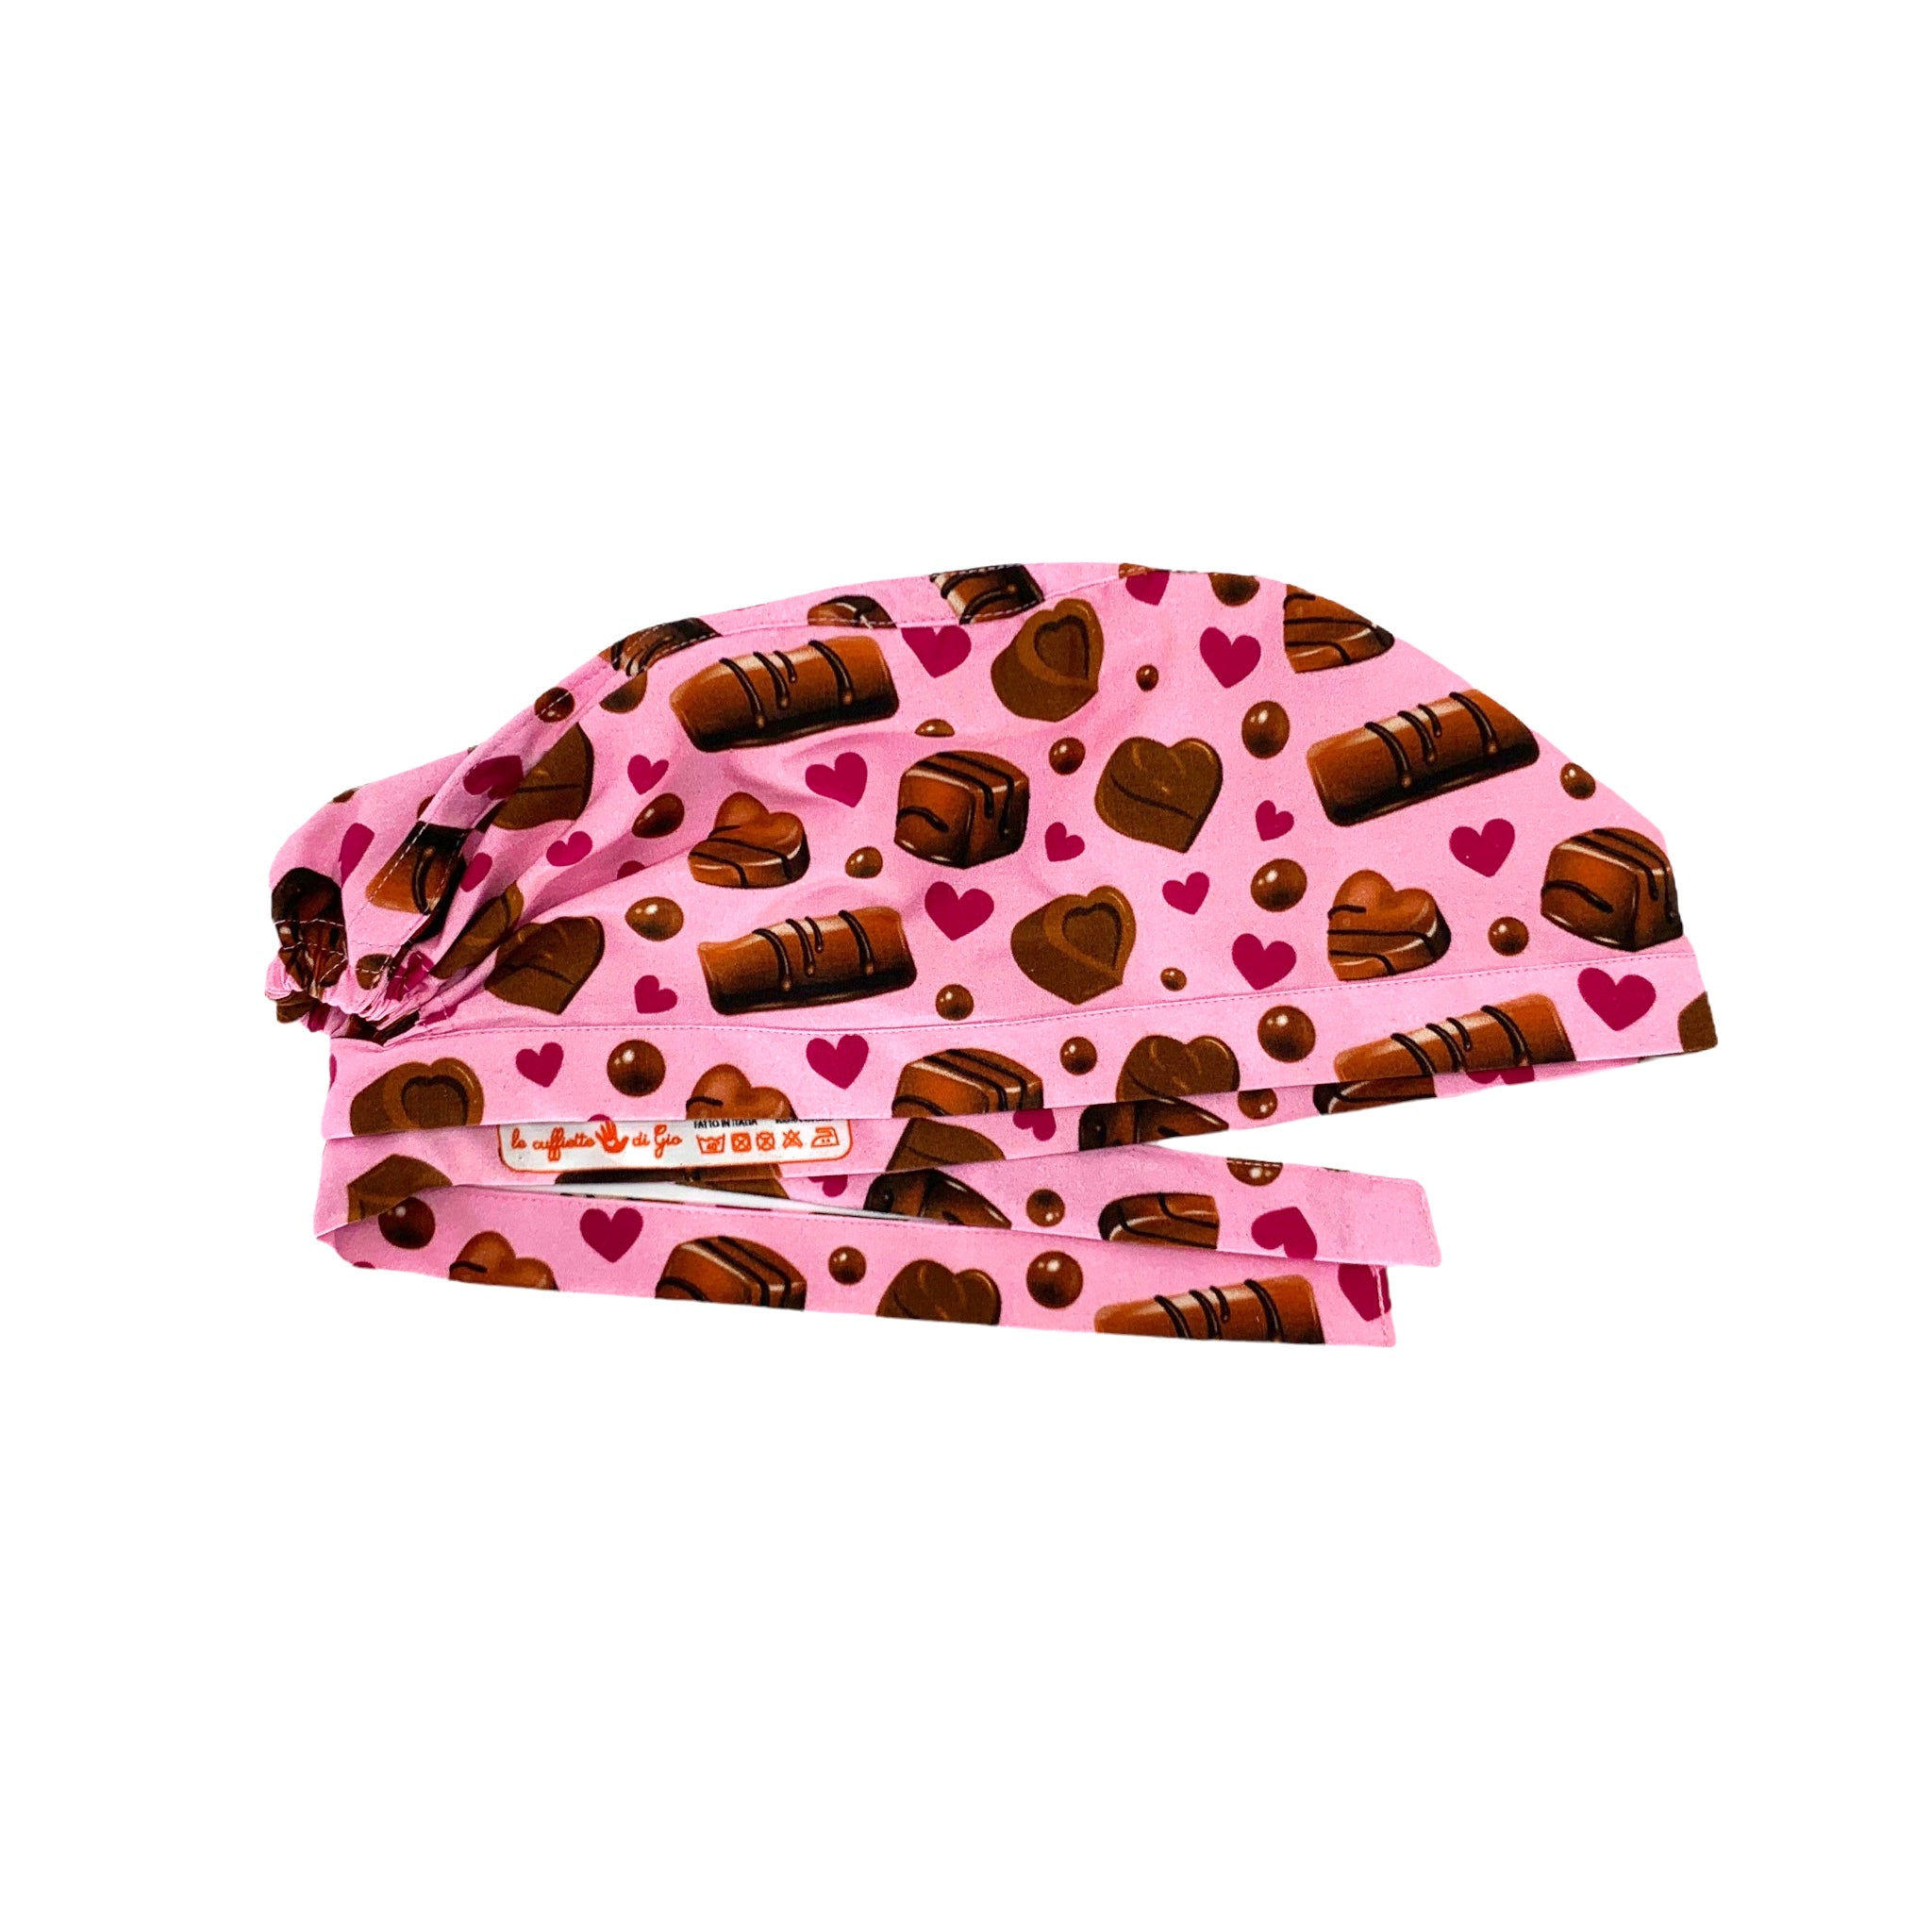 Una cuffietta chirurgica dedicata agli amanti del cioccolato: praline e cioccolatini con piccoli cuori a contrasto su sfondo rosa